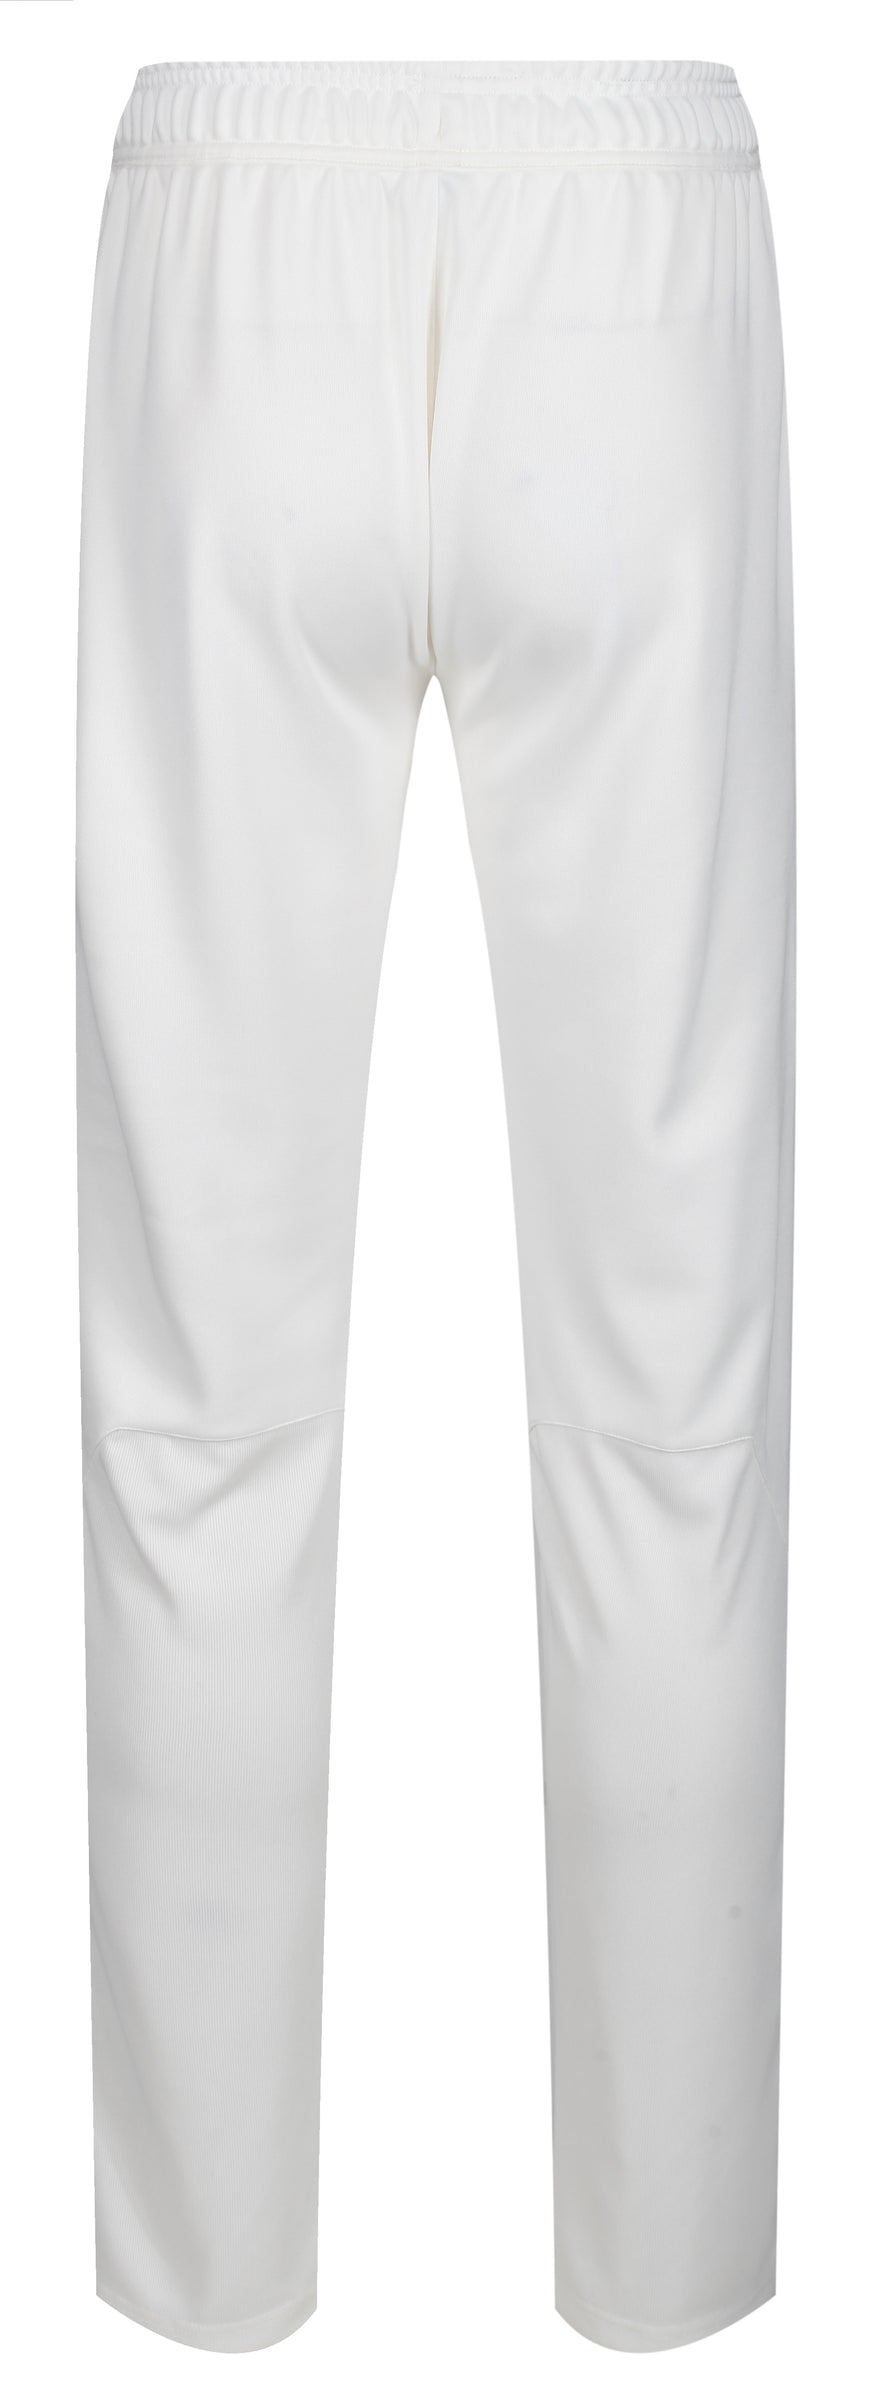 MBS Premium Cricket Trousers - Junior